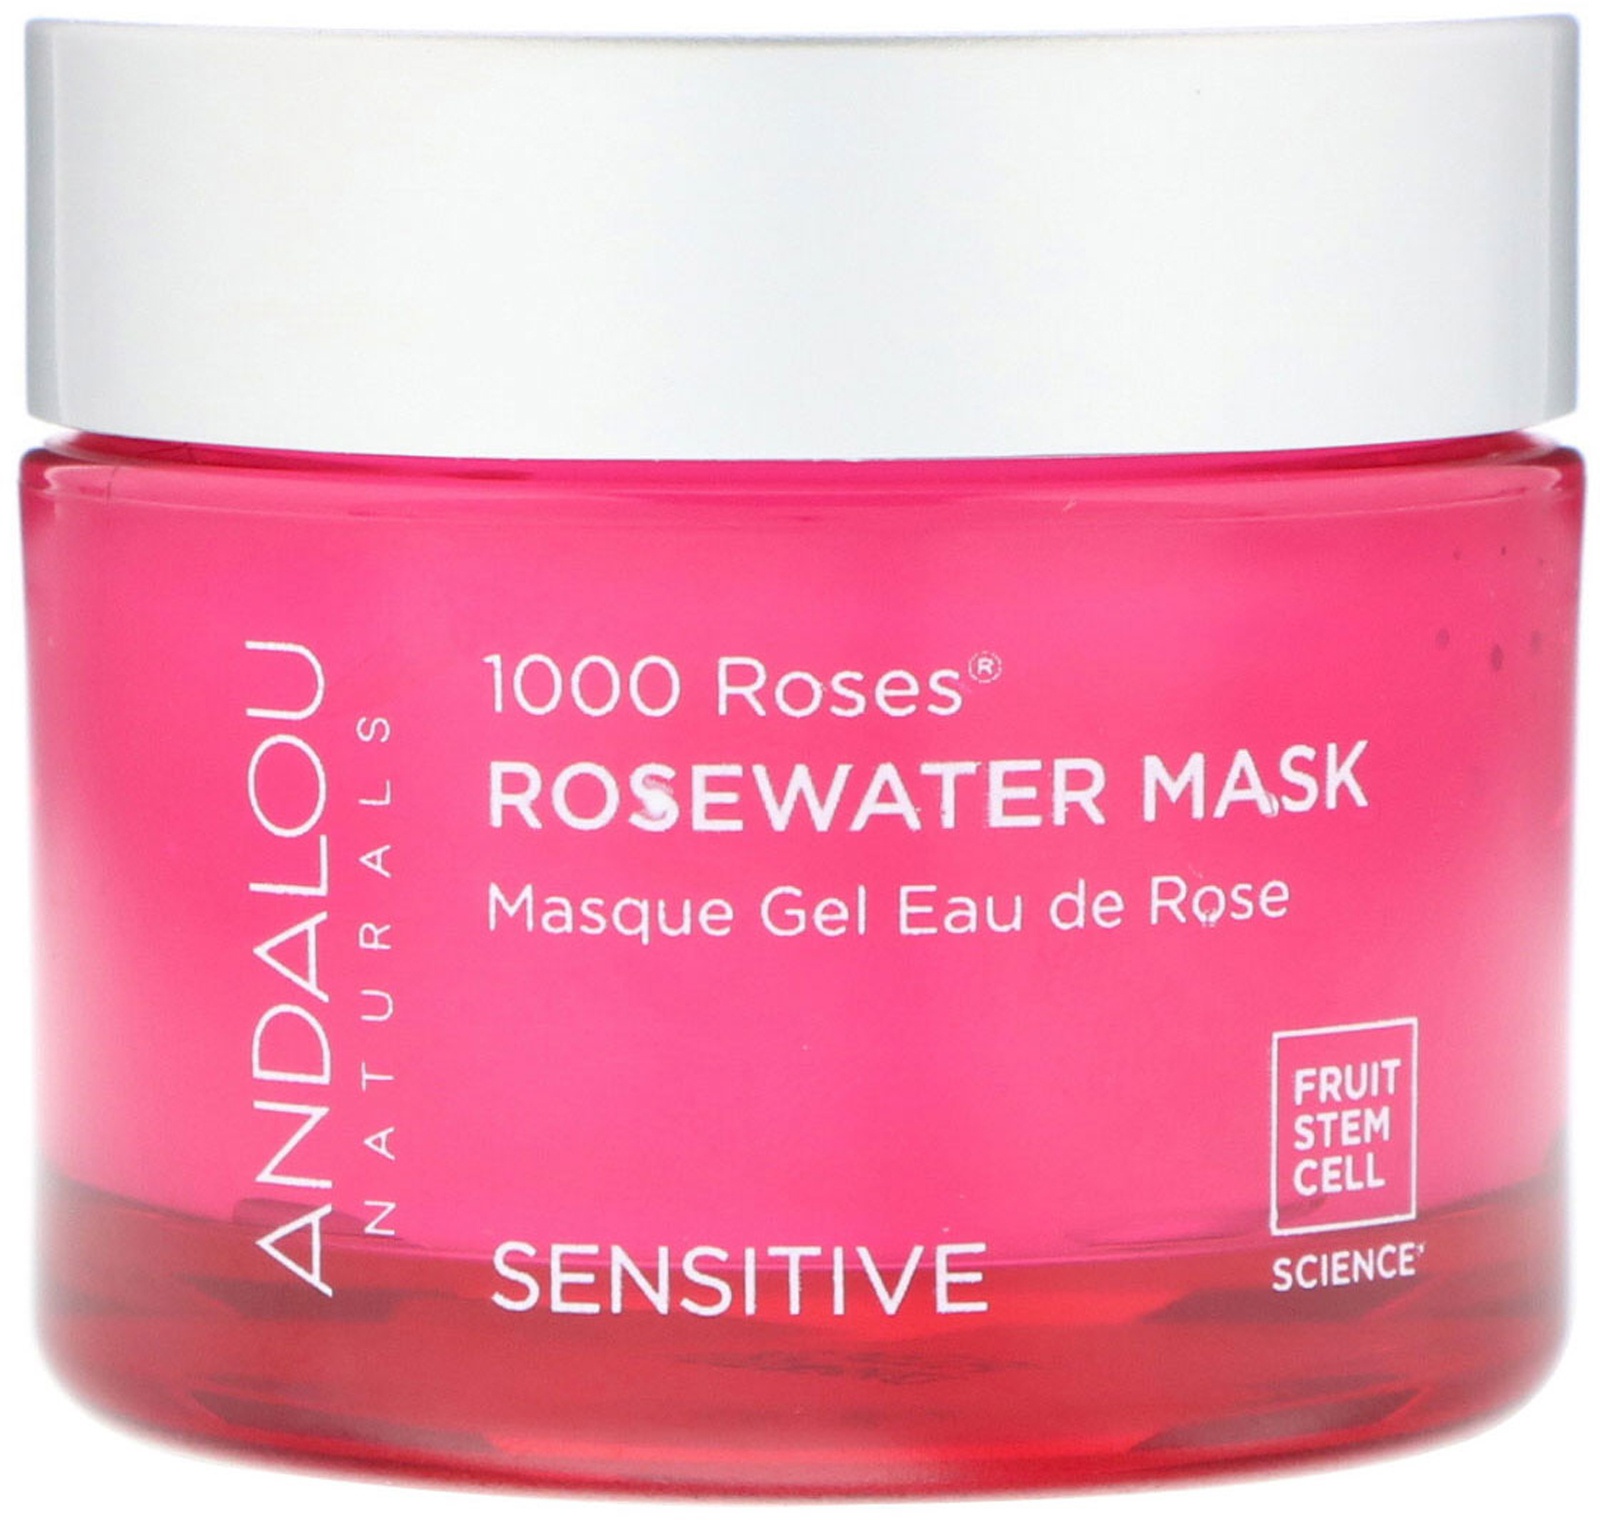 Andalou Naturals 1000 Roses, Rosewater Mask, Sensitive